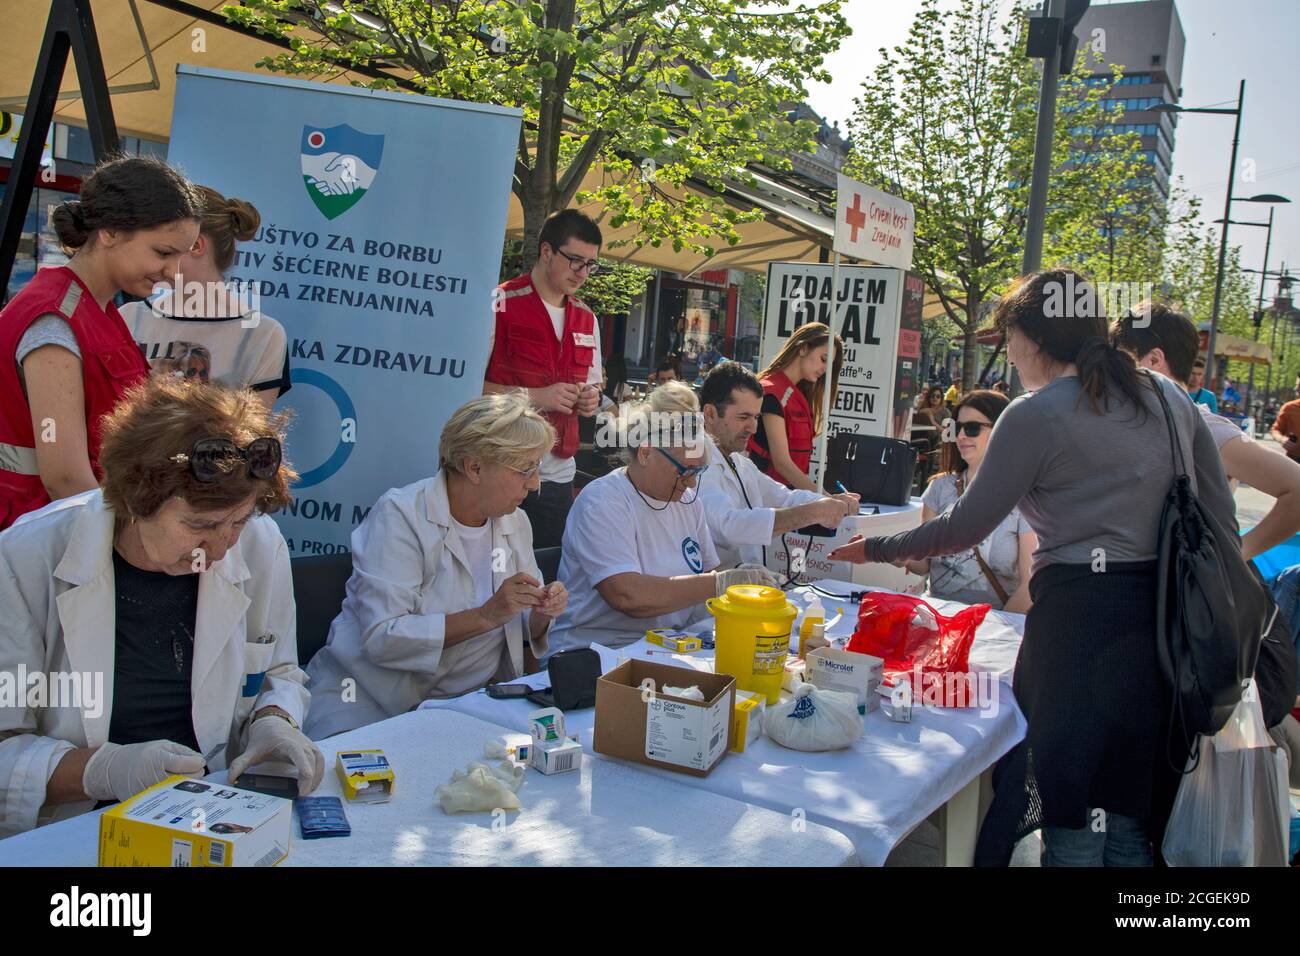 Zrenjanin, Serbie, 12 avril 2018. Action préventive du contrôle médical organisée dans la rue. Les citoyens de la rue ont leur taux de sucre dans le sang Banque D'Images